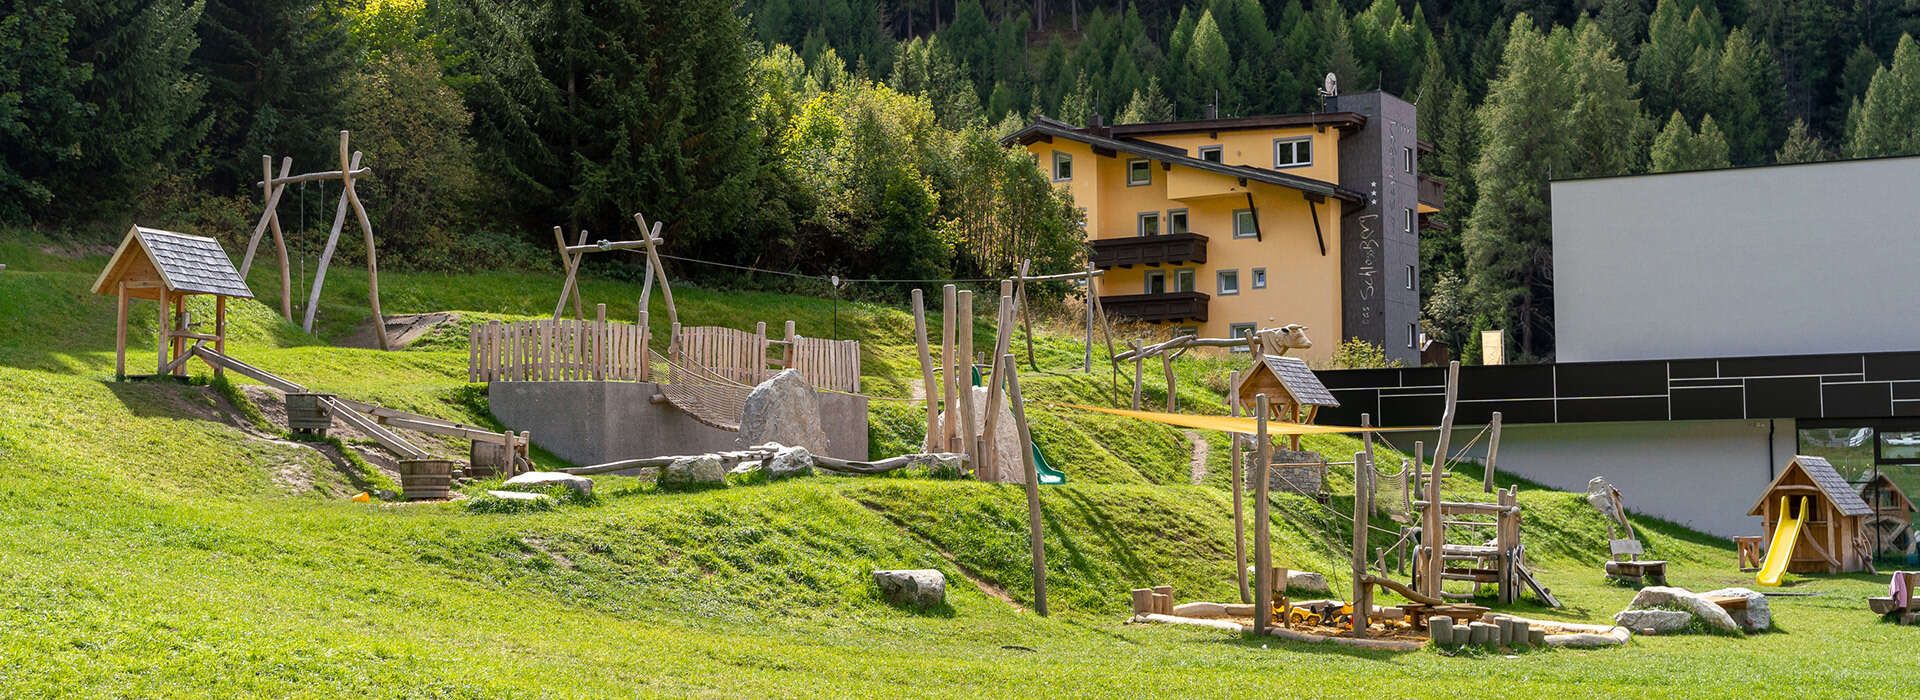 Spielplatz vom Schlossberg Hotel in Nauders Tirol